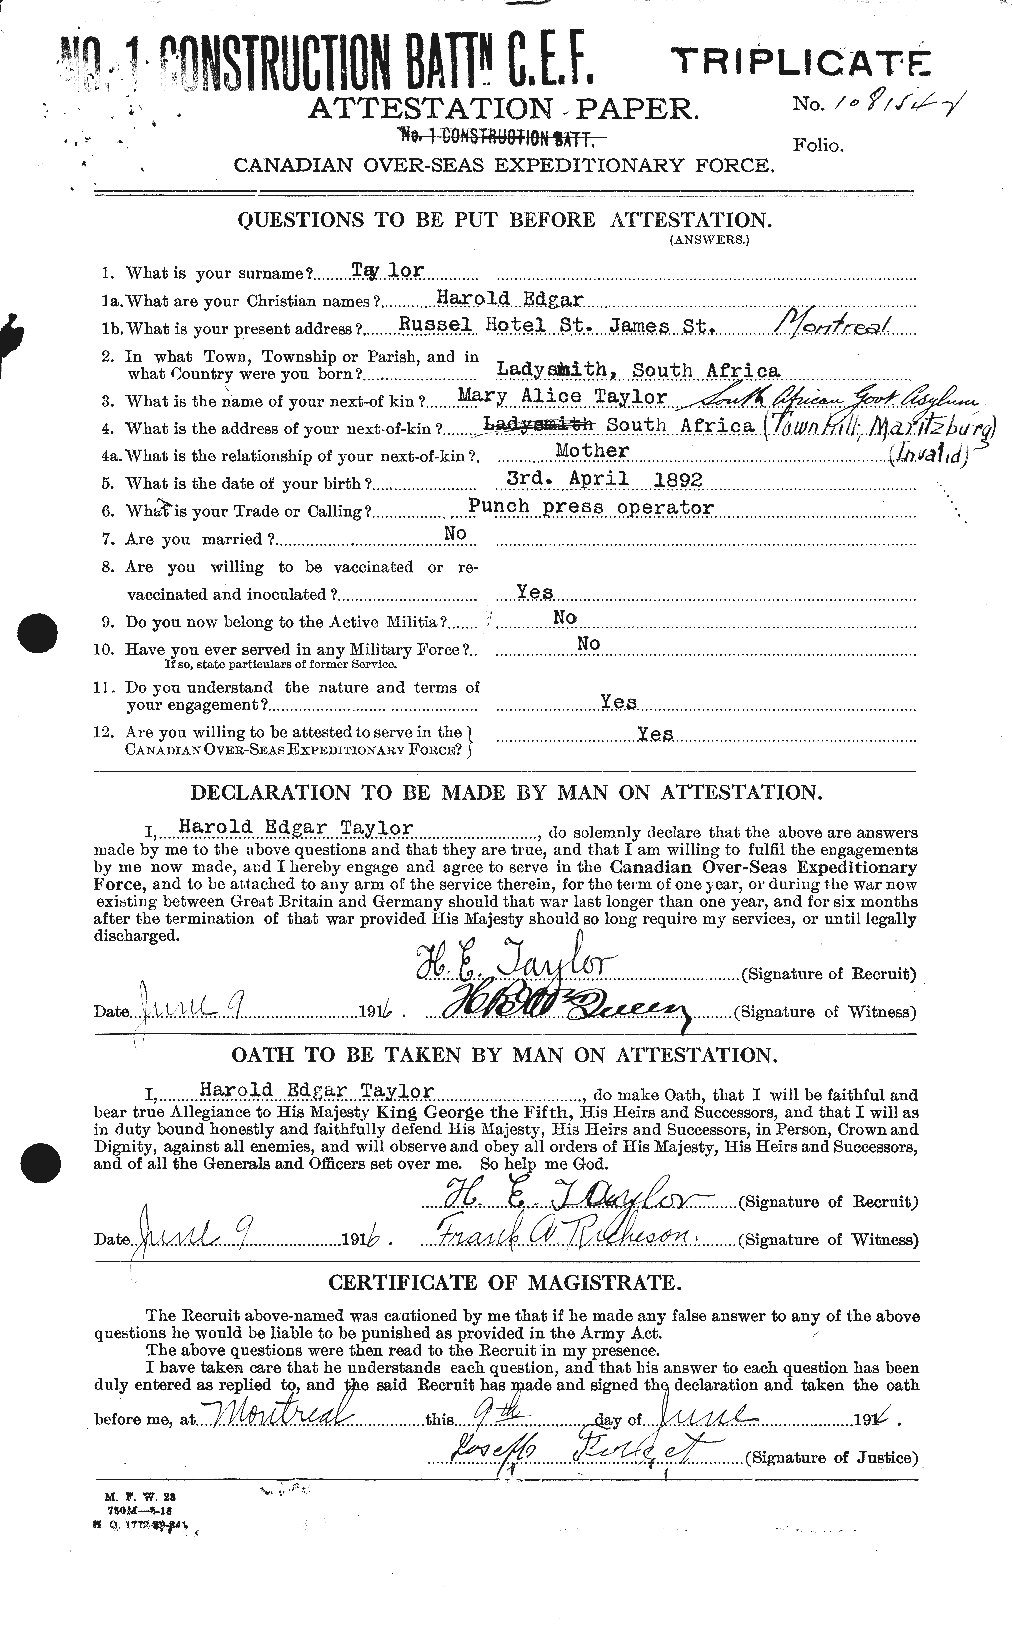 Dossiers du Personnel de la Première Guerre mondiale - CEC 626420a